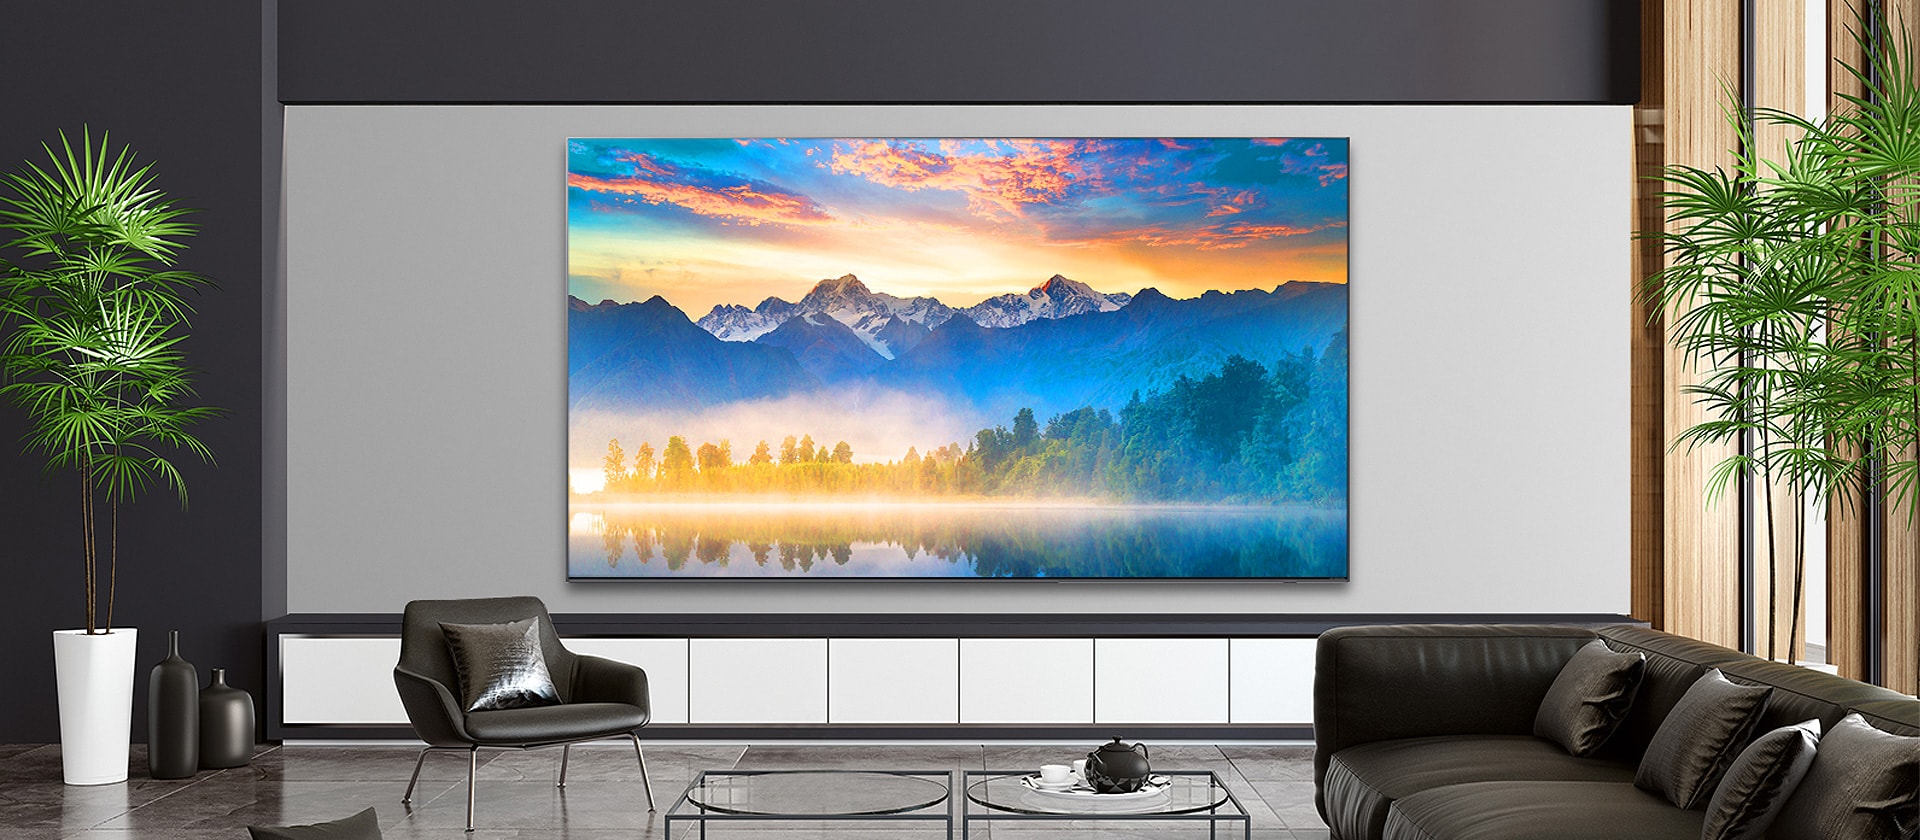 Una sala de estar con una pantalla de TV montada en la pared que muestra una escena natural.